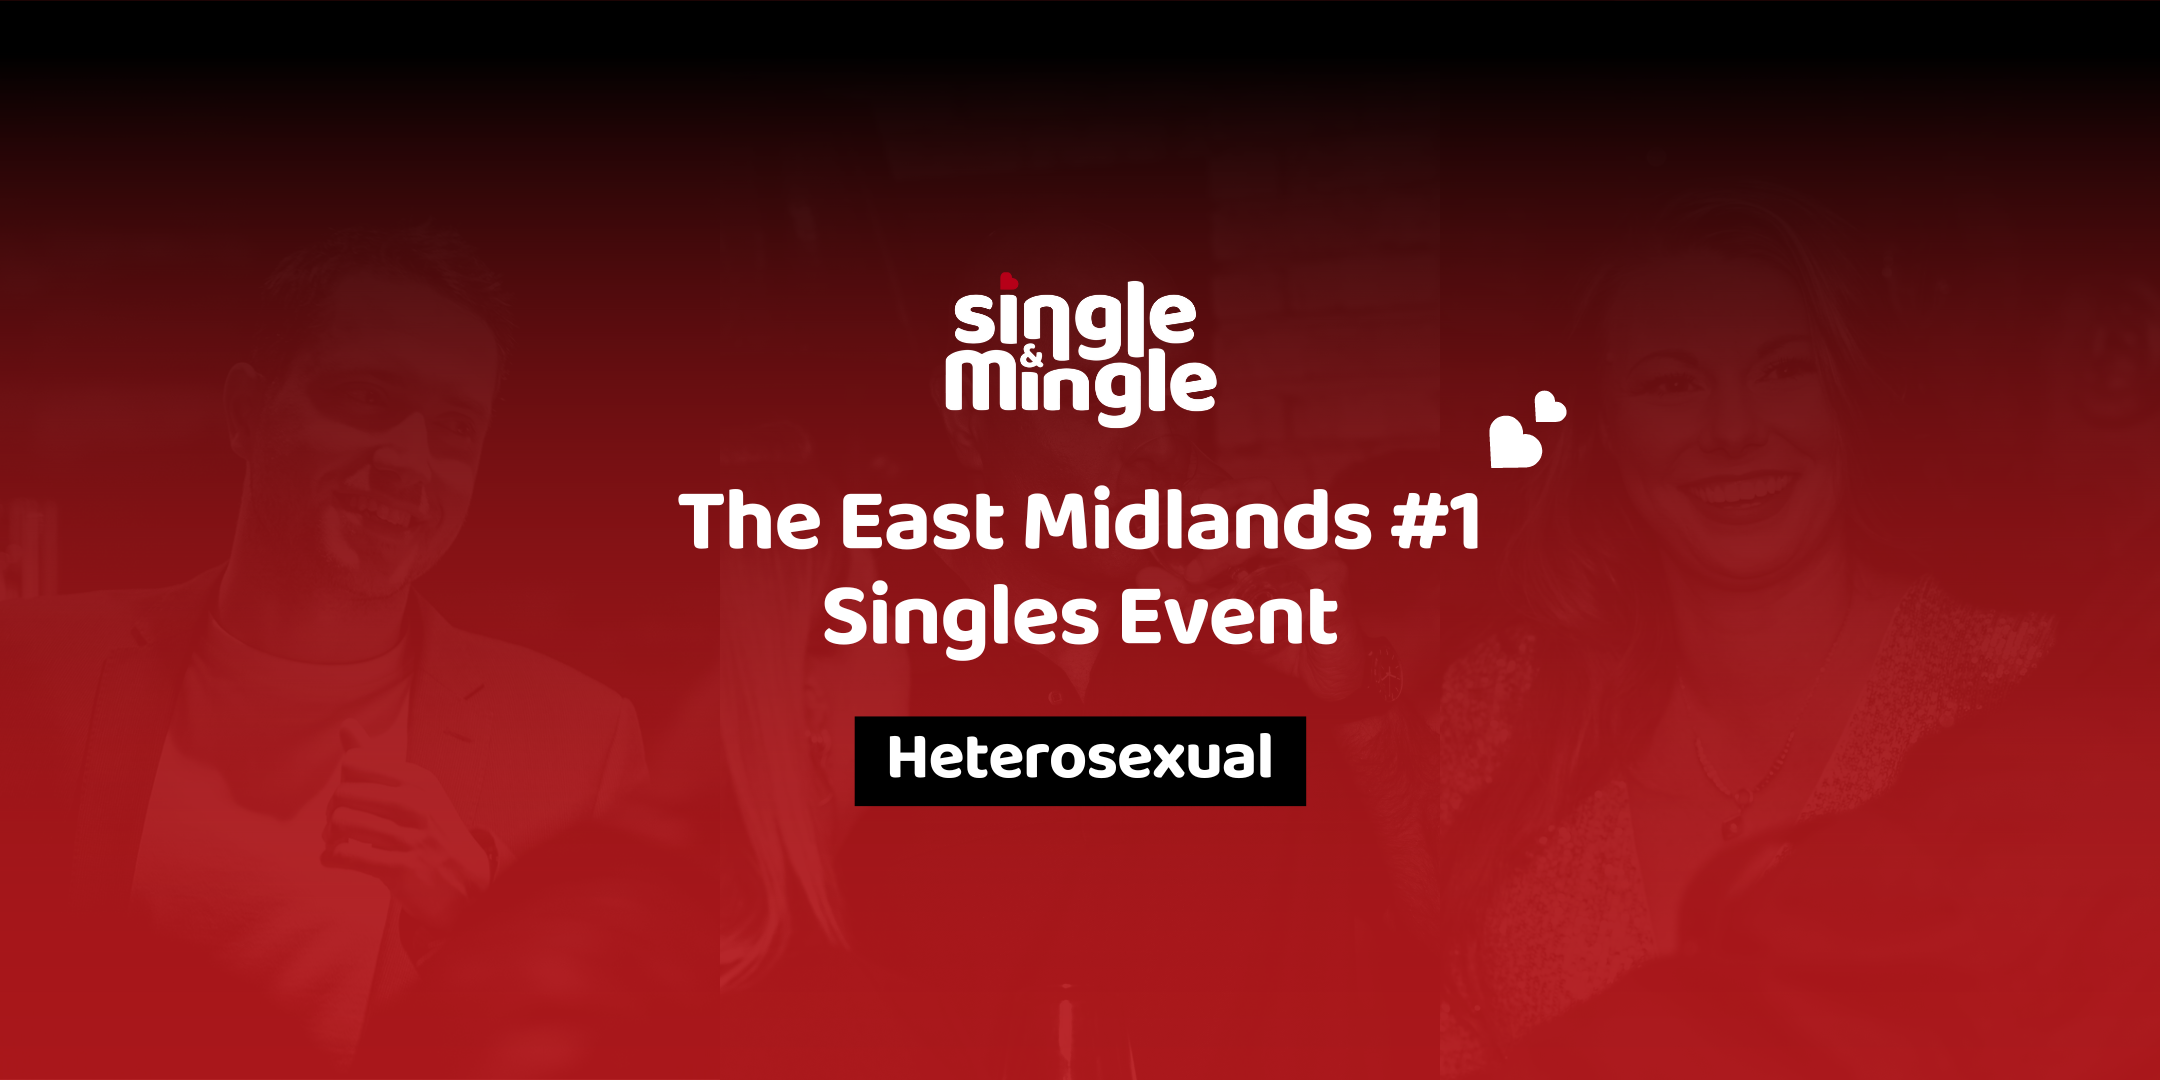 The East Midland's #1 Singles Event - Heterosexual Singles - Single & Mingle